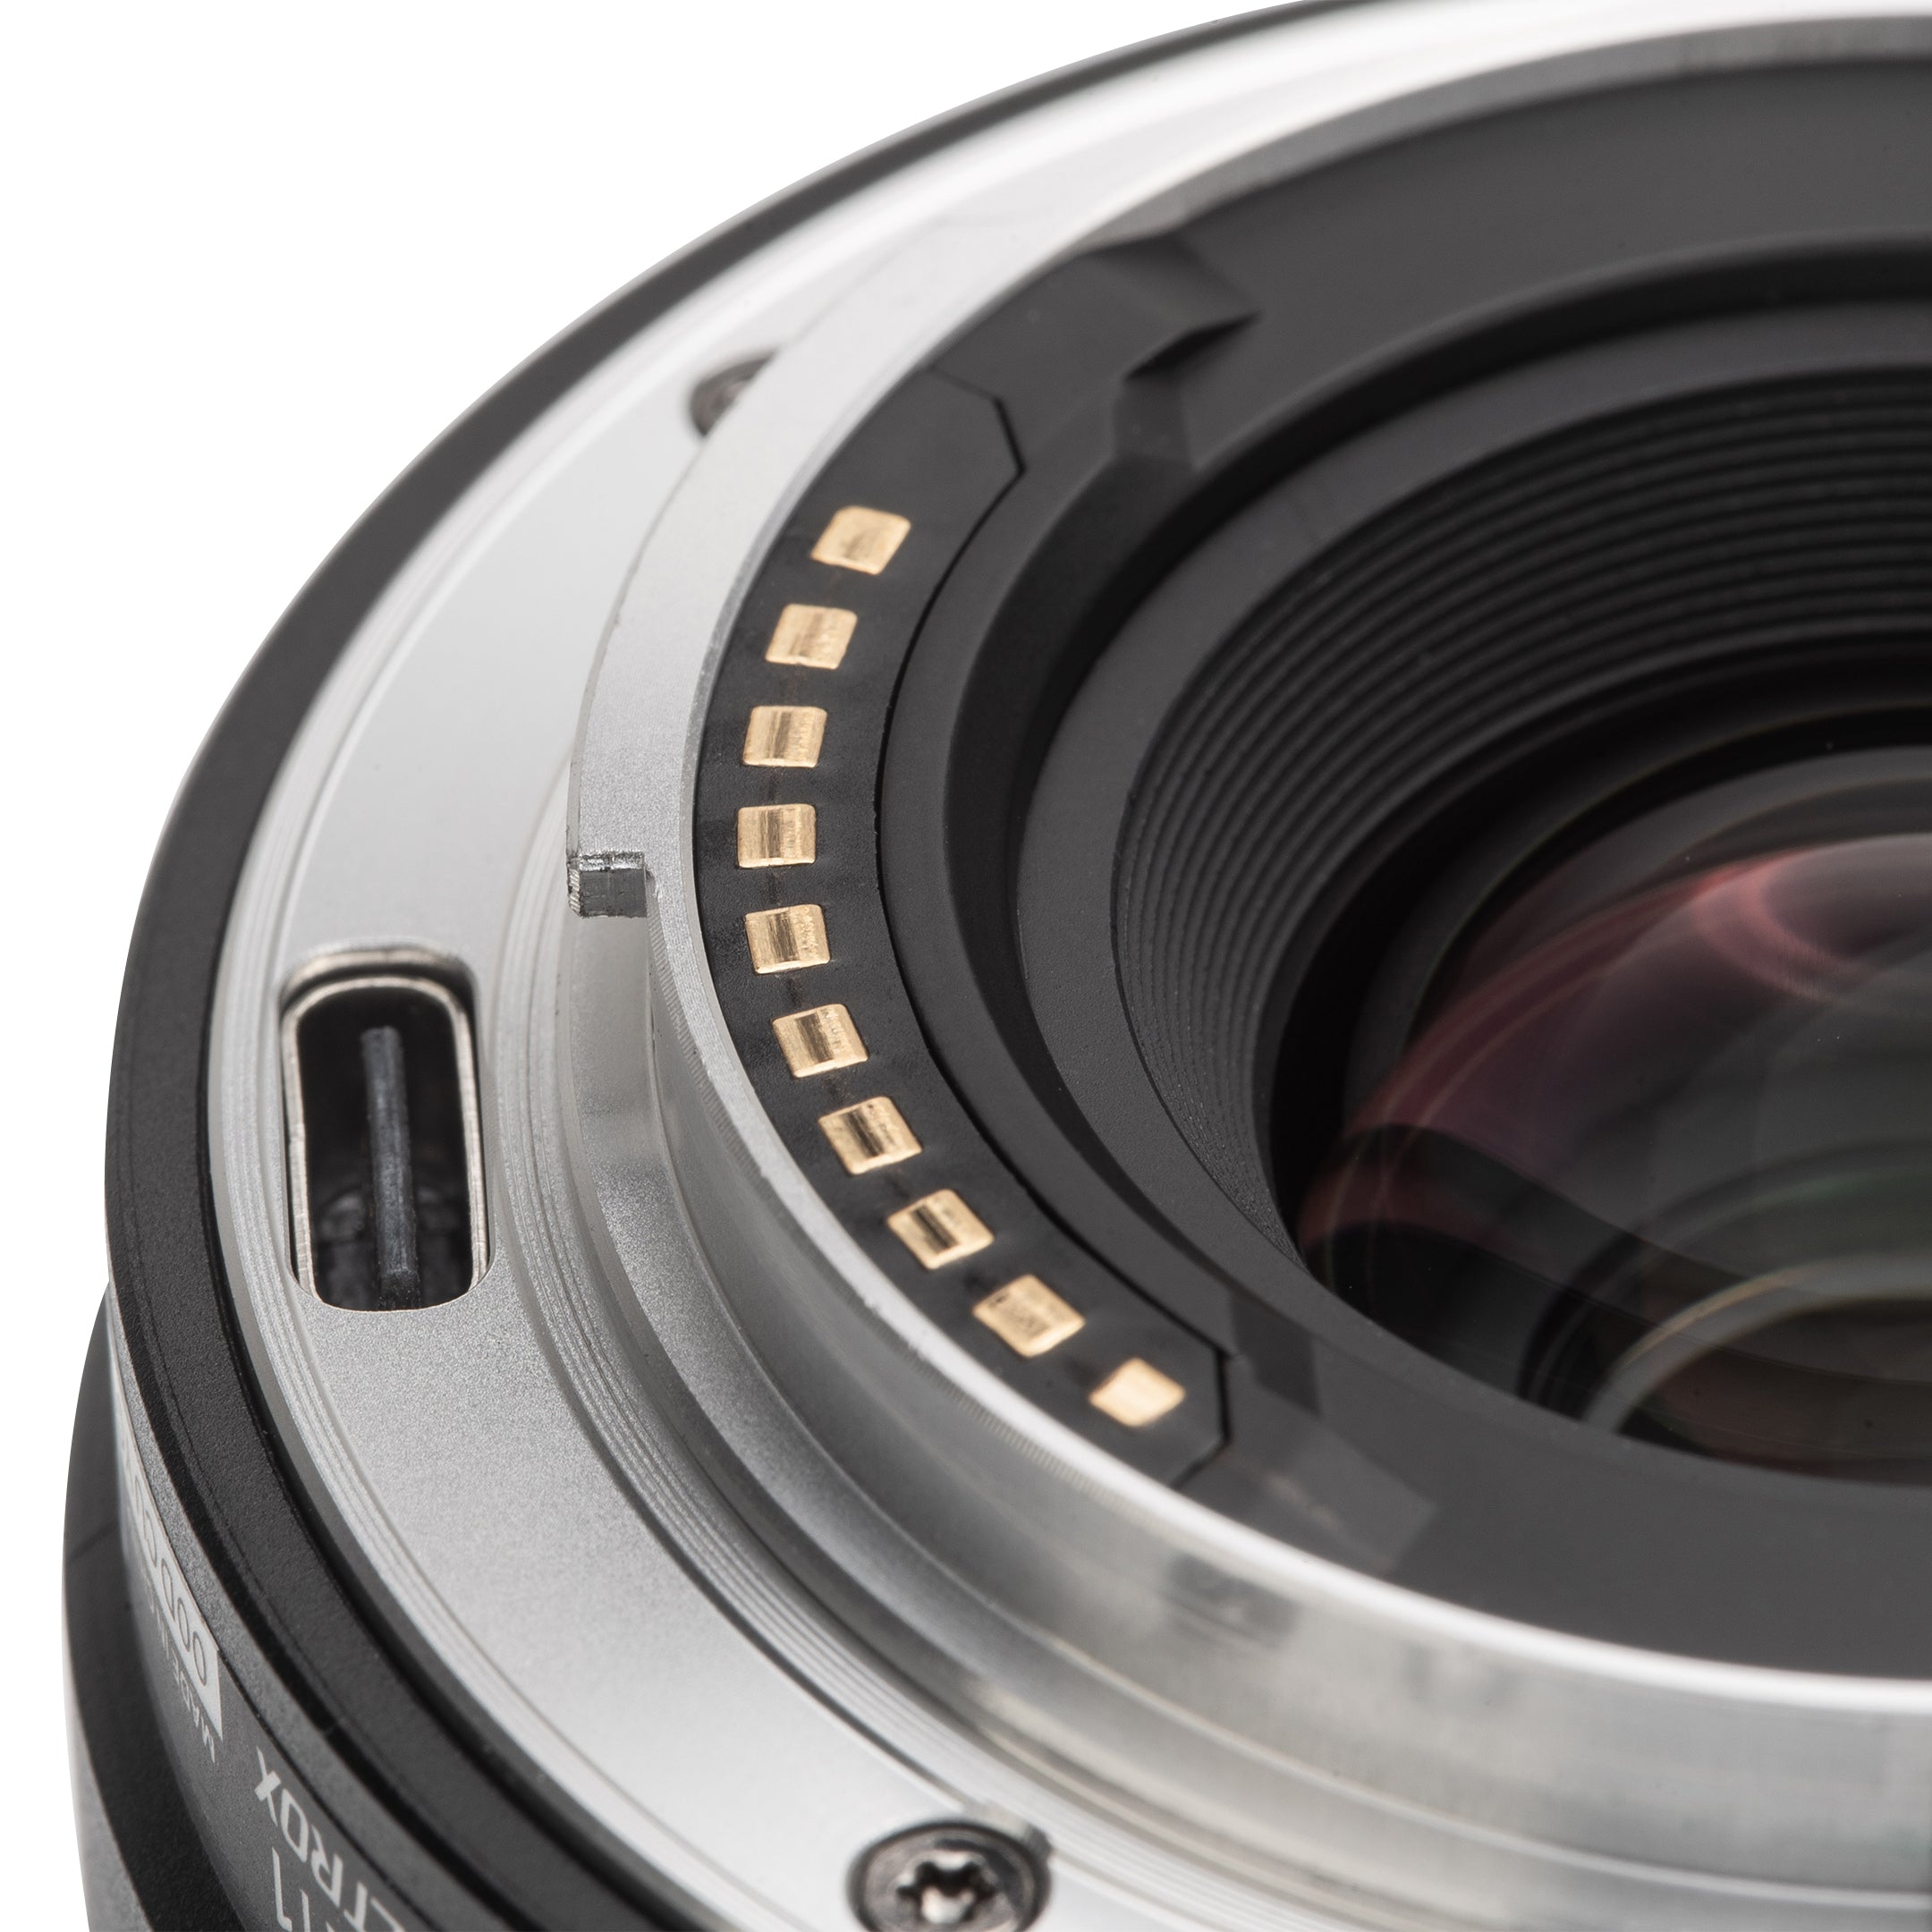 Viltrox AF 20mm F2.8 Full Frame Lens For Sony E-Mount